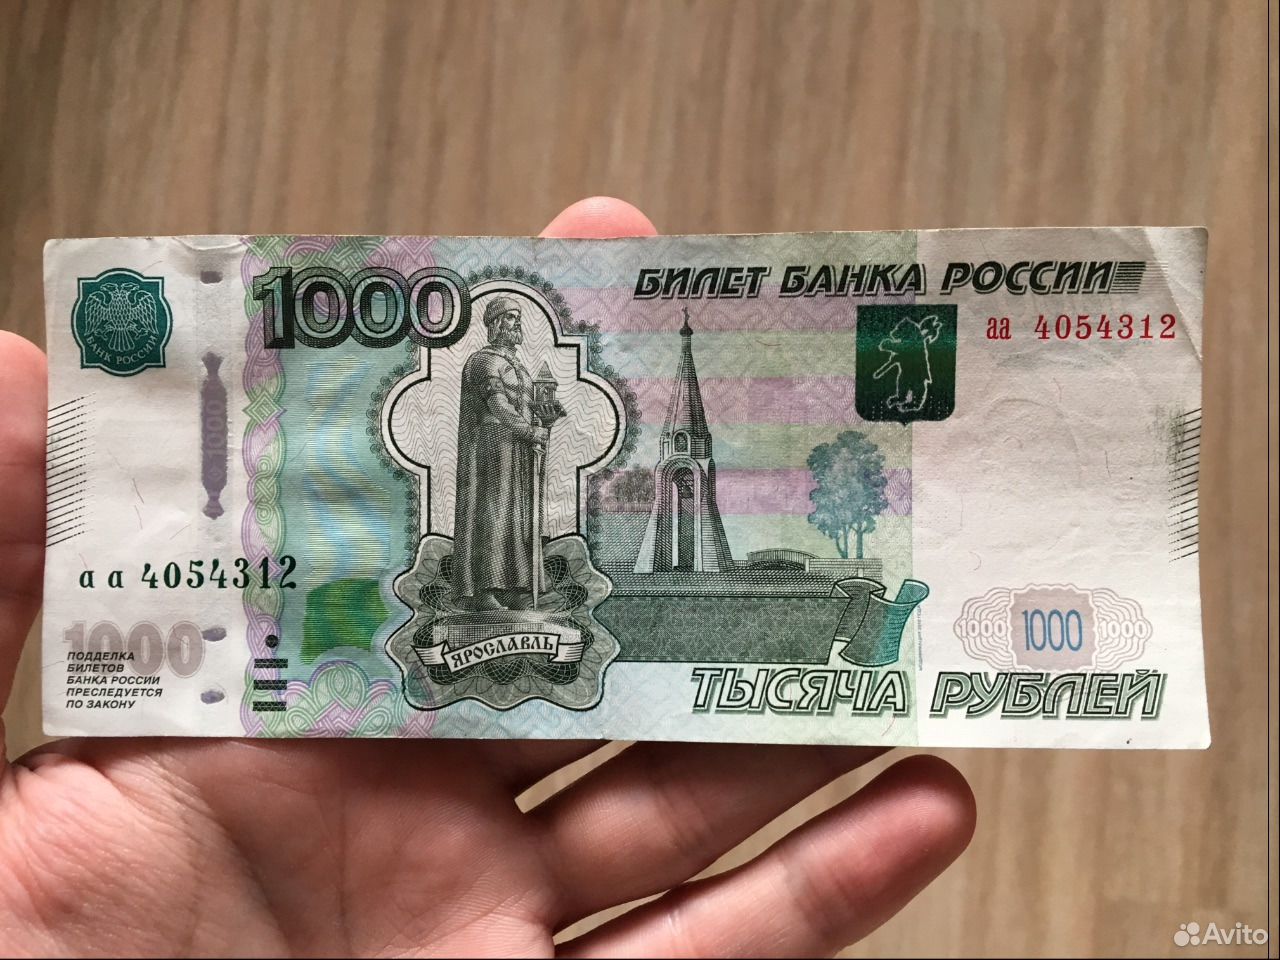 Вернем 1000 рублей. 1000 Рублей. Купюра 1000 рублей. Банкнота 1000 рублей. Тысяча рублей в руке.